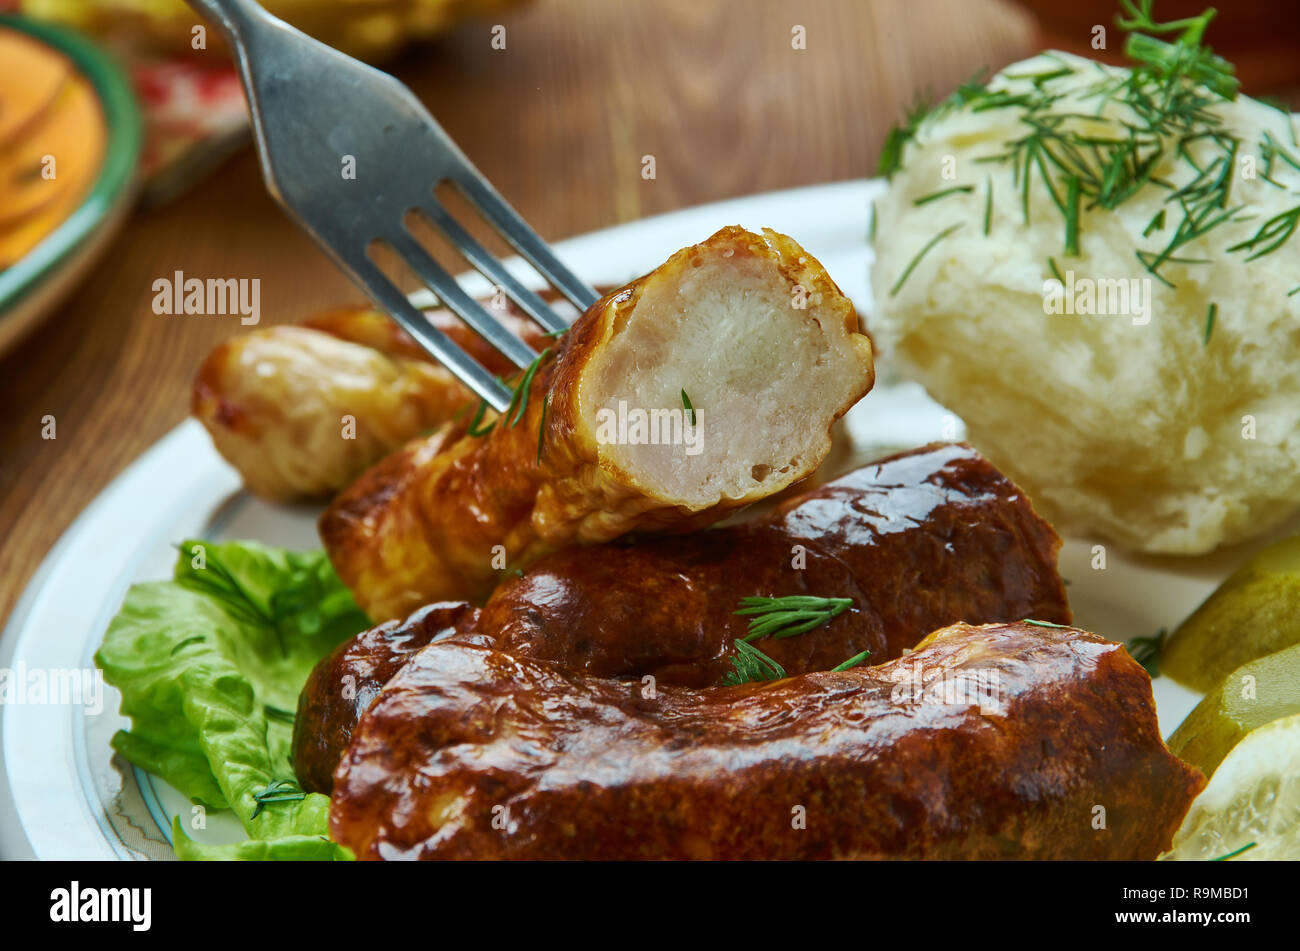 Medisterpolse, saucisse épicée scandinave fait de porc haché et du suif, des plats danois traditionnels, des plats variés, vue du dessus. Banque D'Images